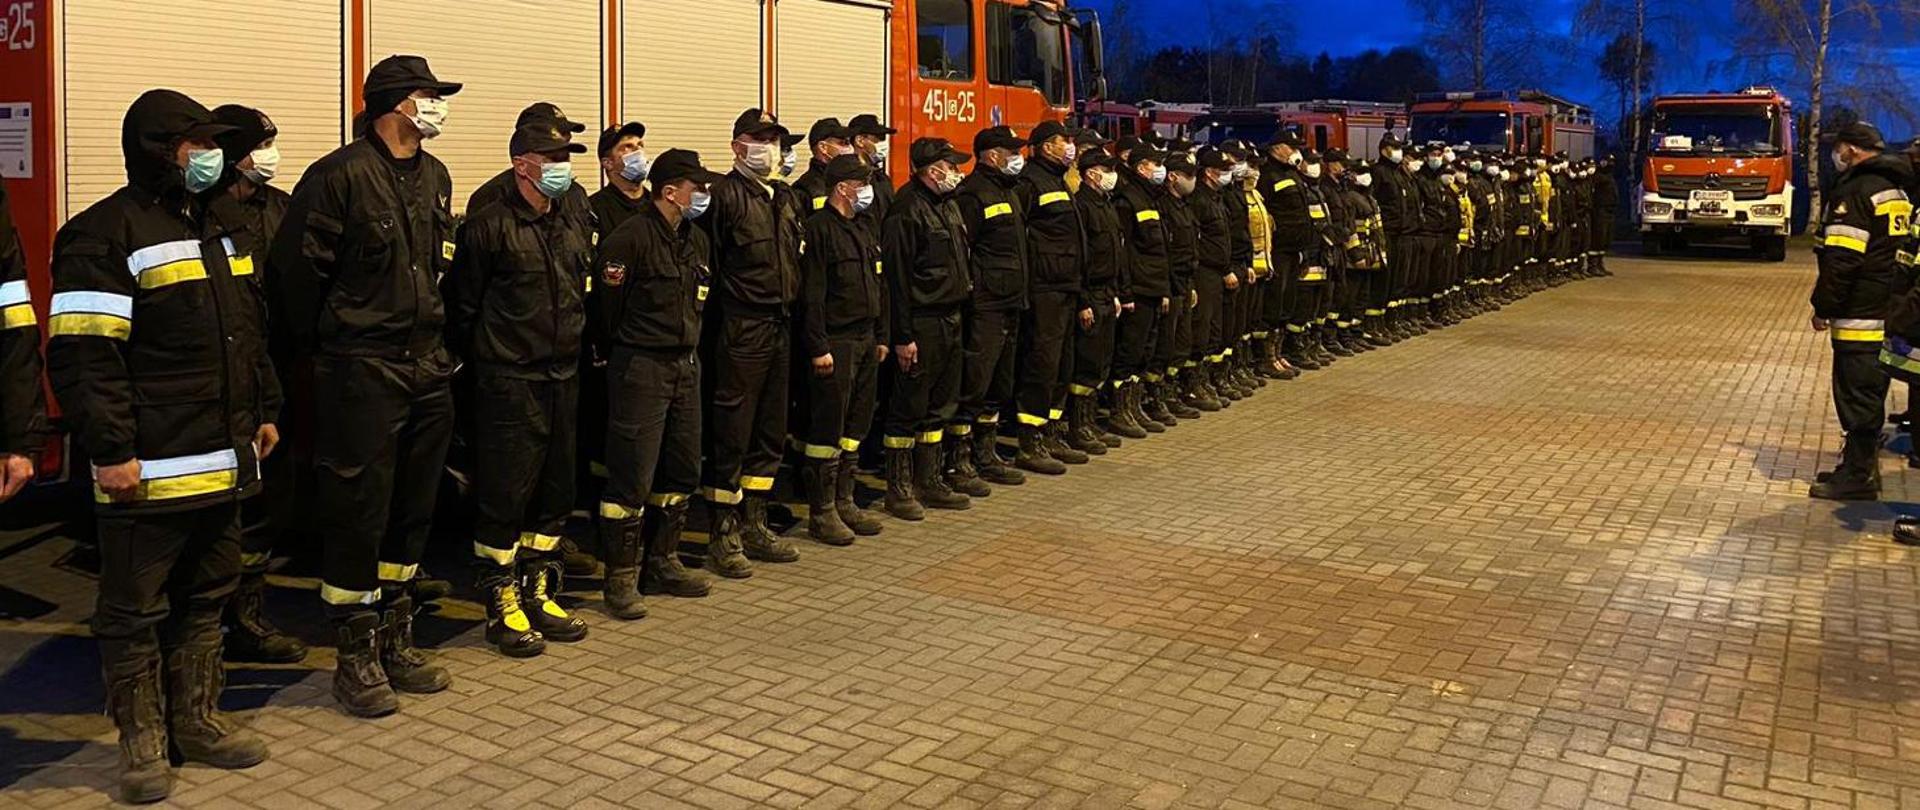 zbiórka kilkudziesięciu strażaków ustawionych w dwuszeregu, w tle wozy bojowe straży pożarnej